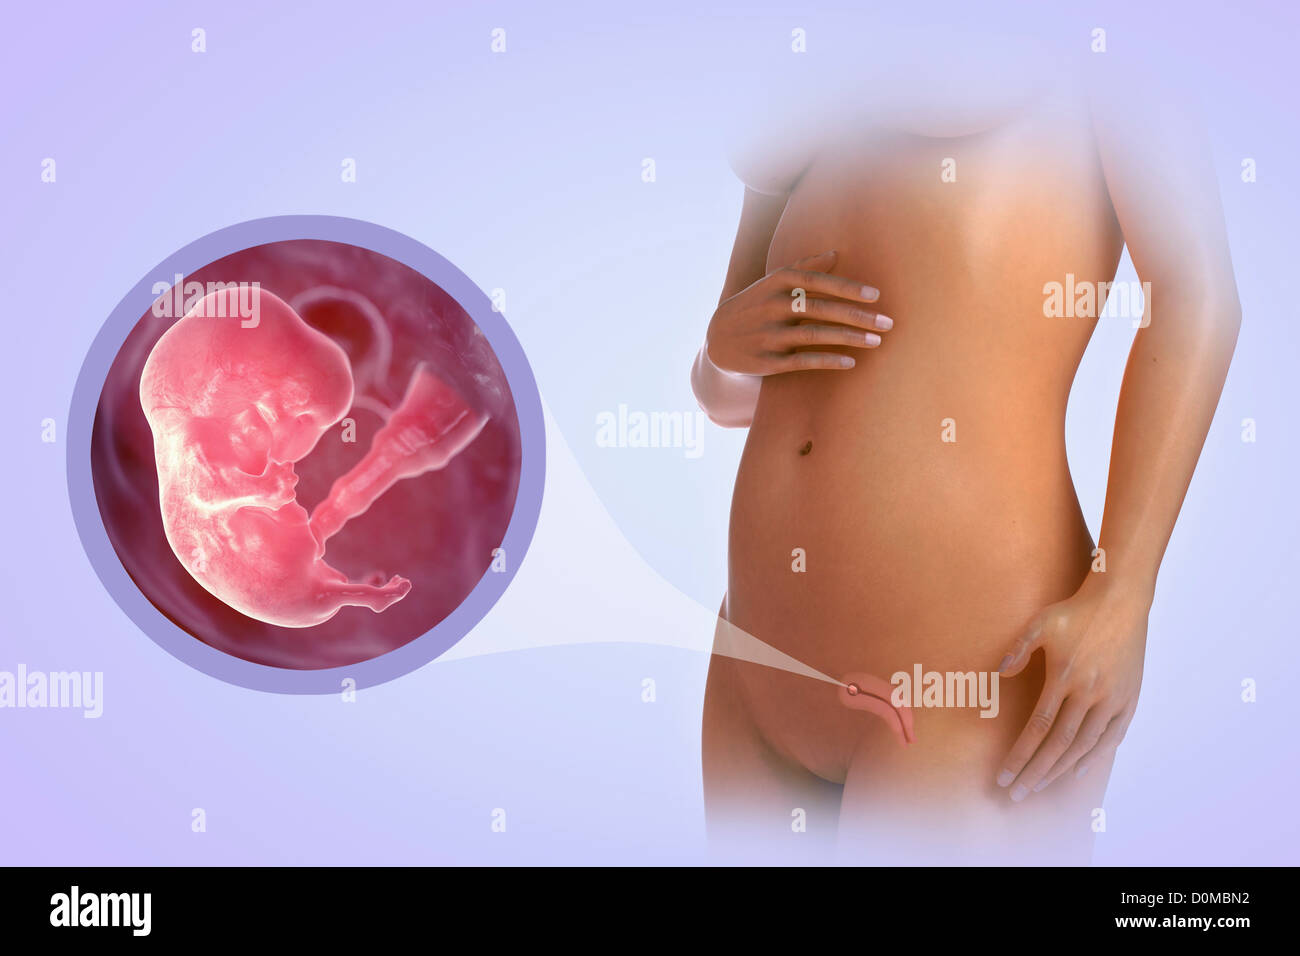 Un modèle humain montrant la grossesse en semaine 8. Banque D'Images